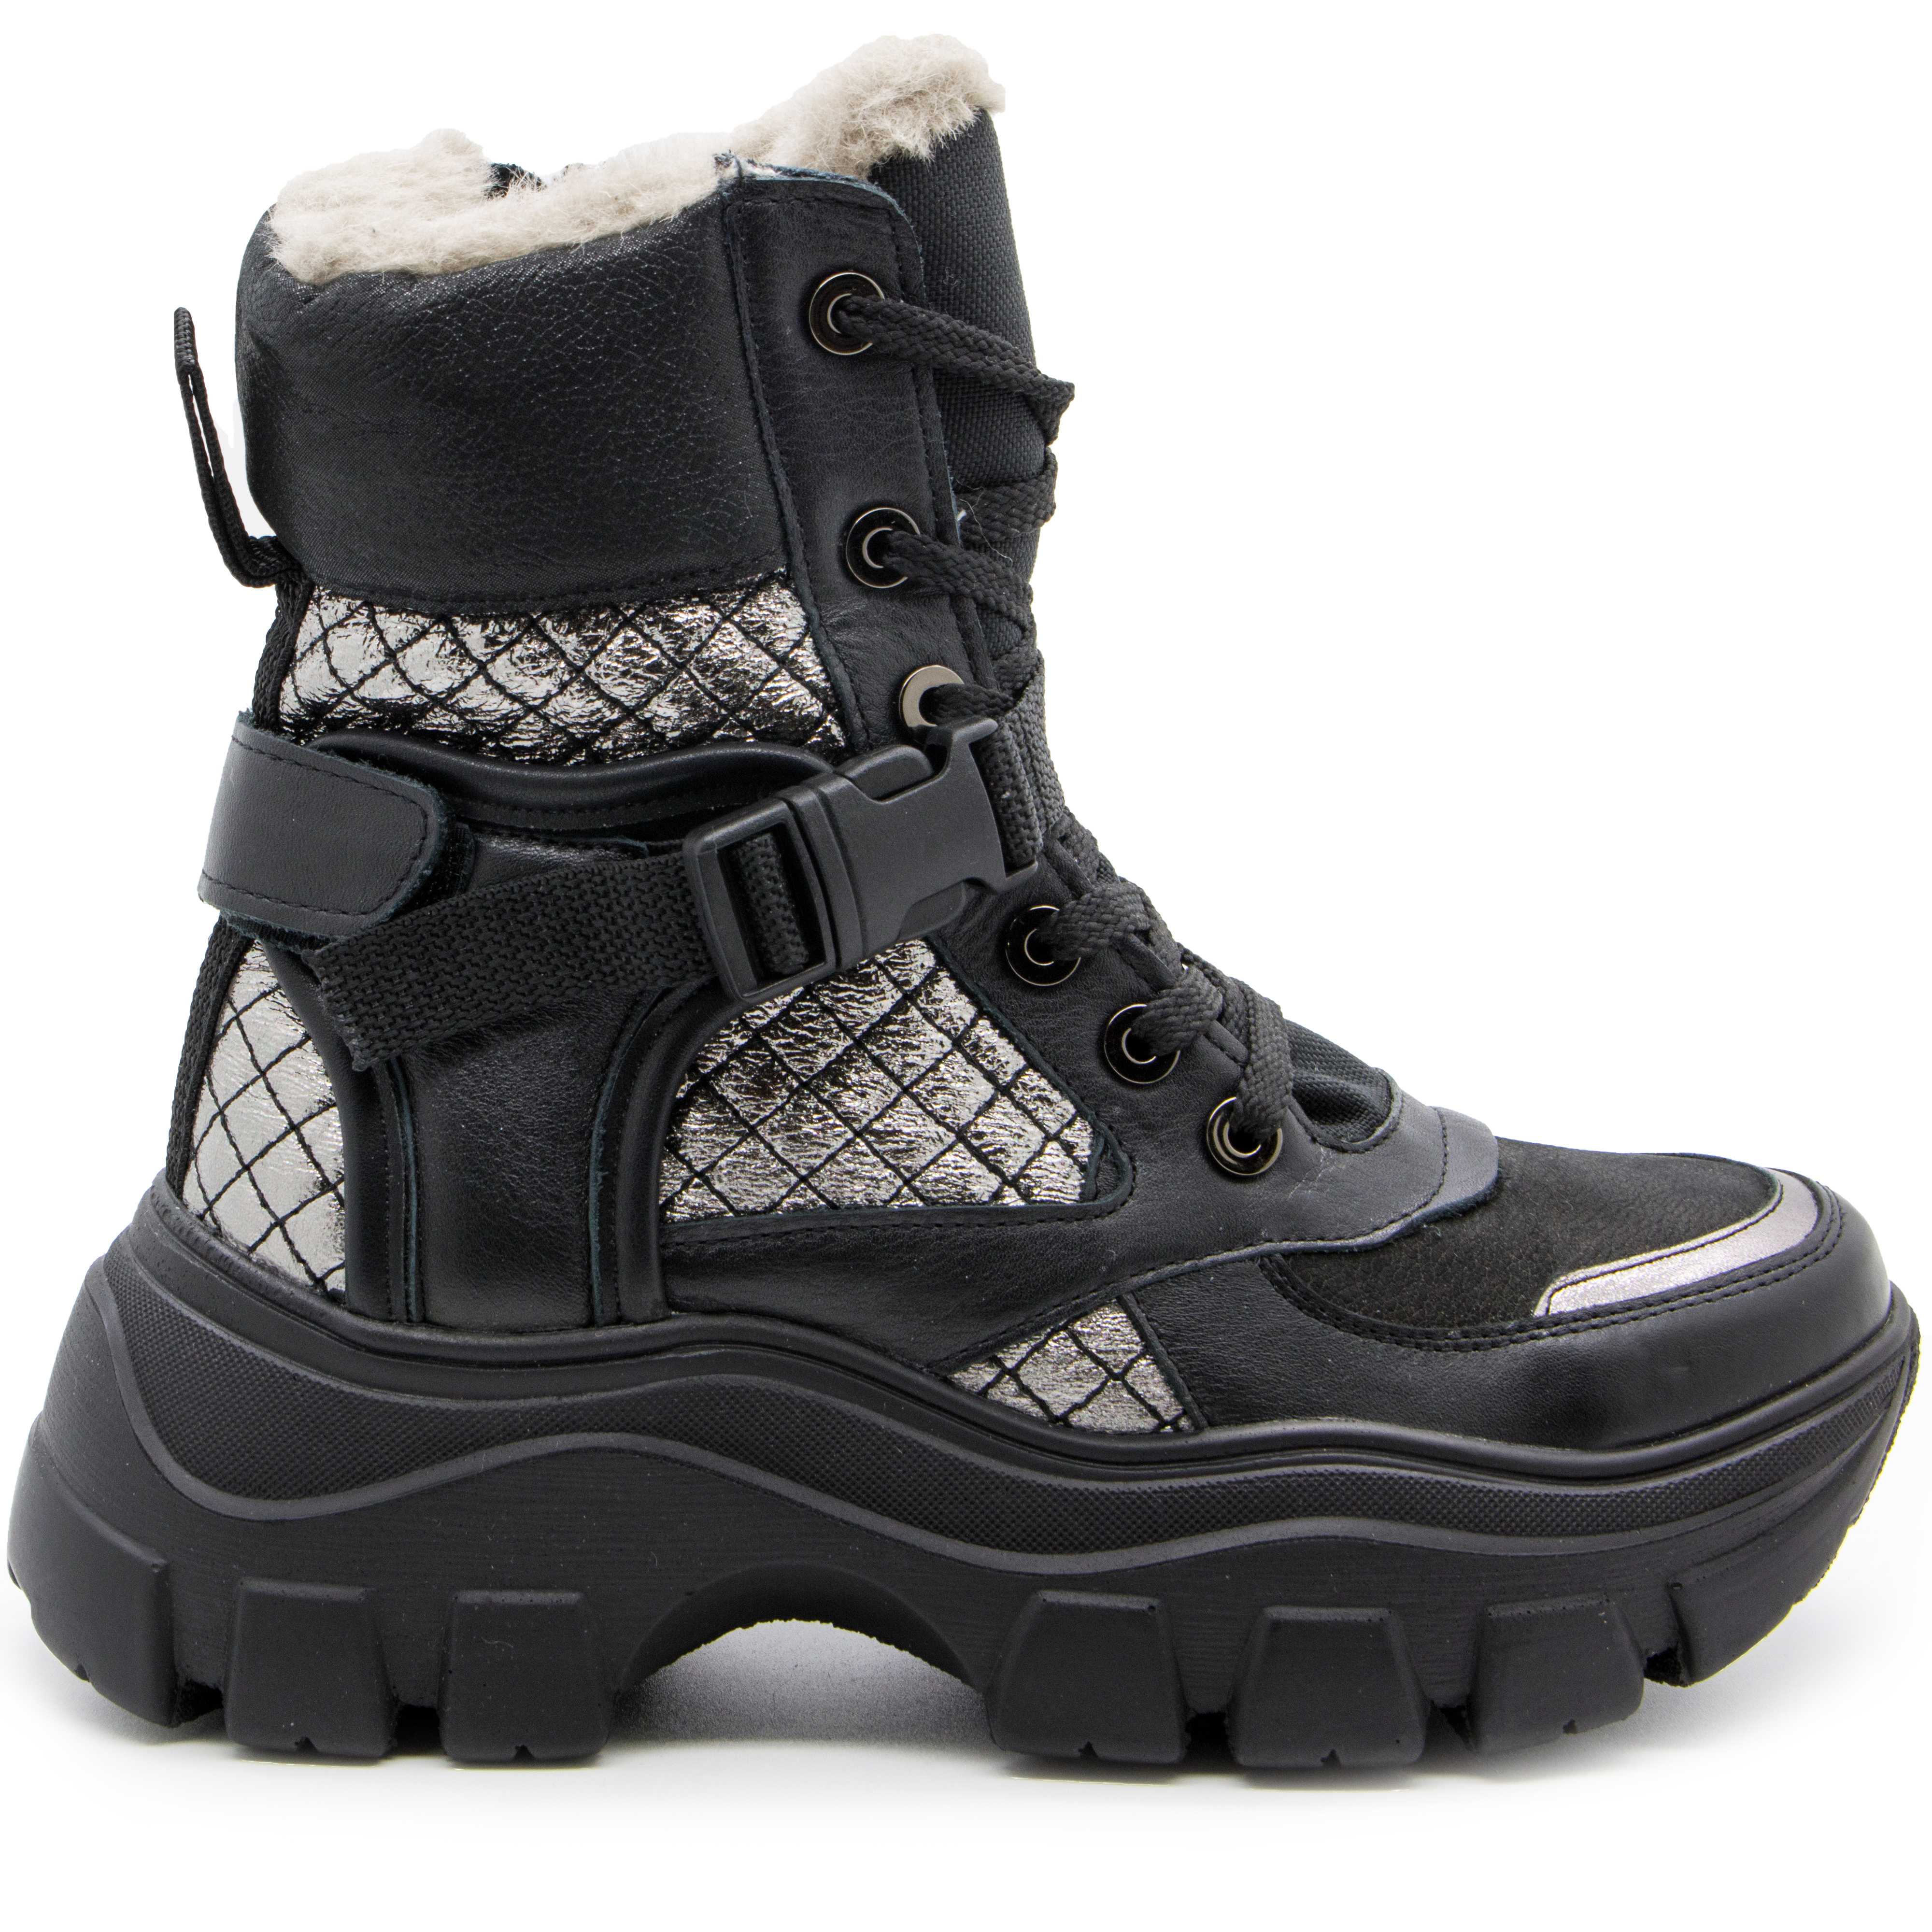 Зимние ботинки (2225) материал Нубук, цвет Черный  для девочки 39-40 размеры – Sole Kids, Днепр. Фото 2